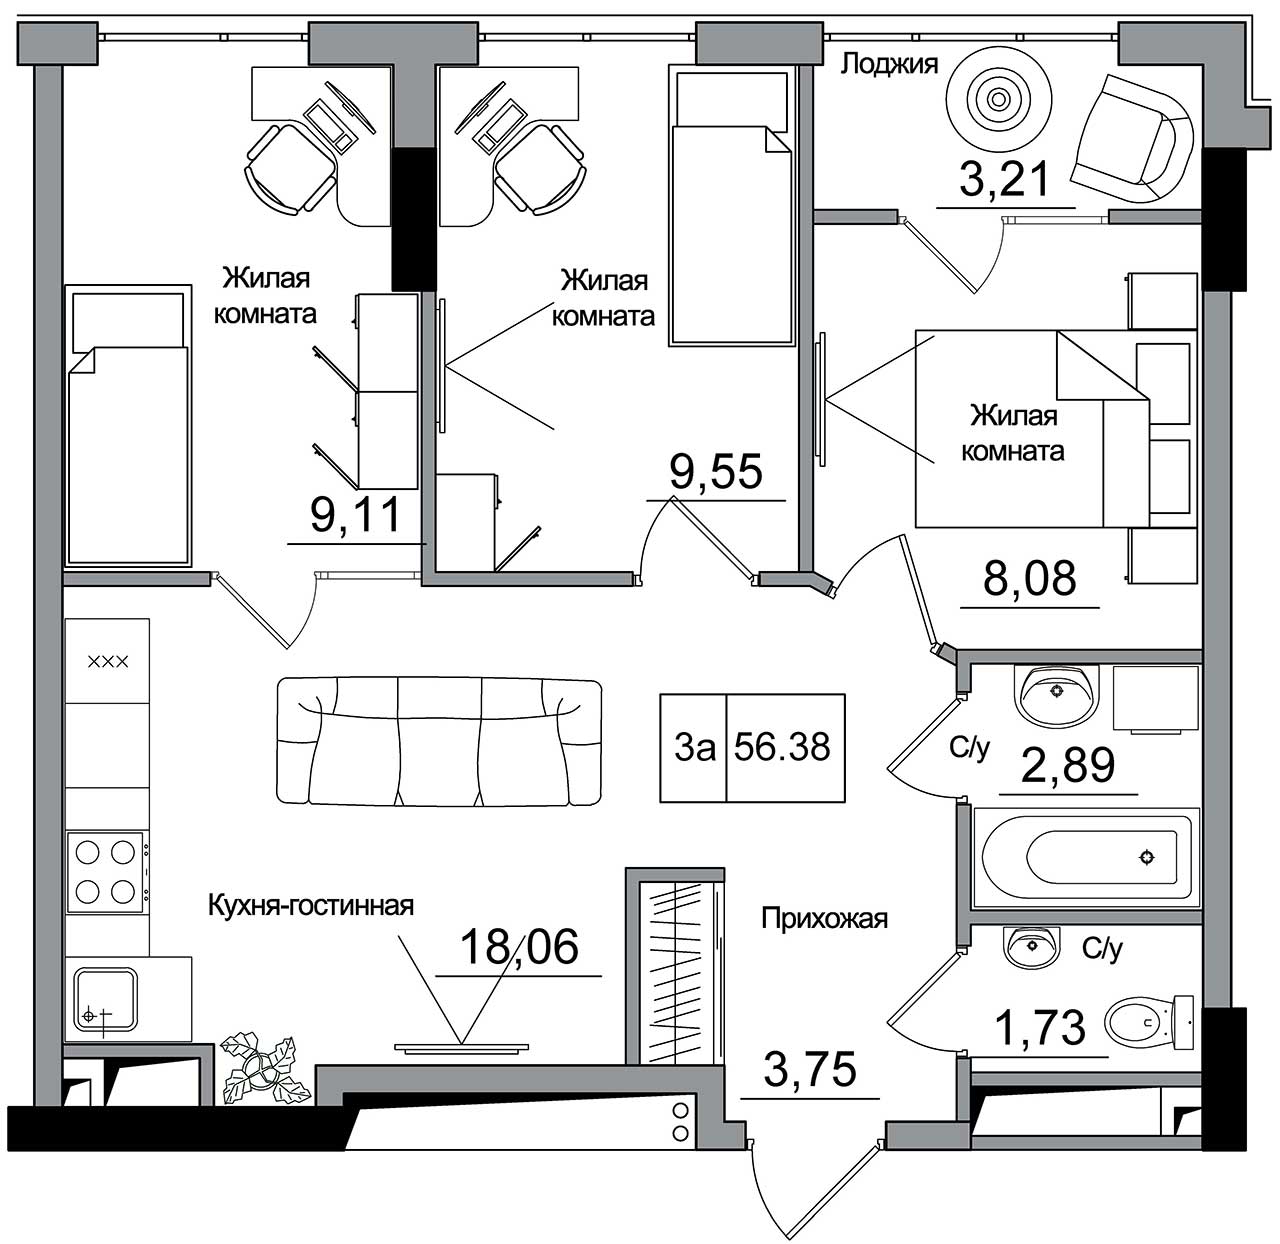 Планування 3-к квартира площею 56.38м2, AB-16-11/00008.